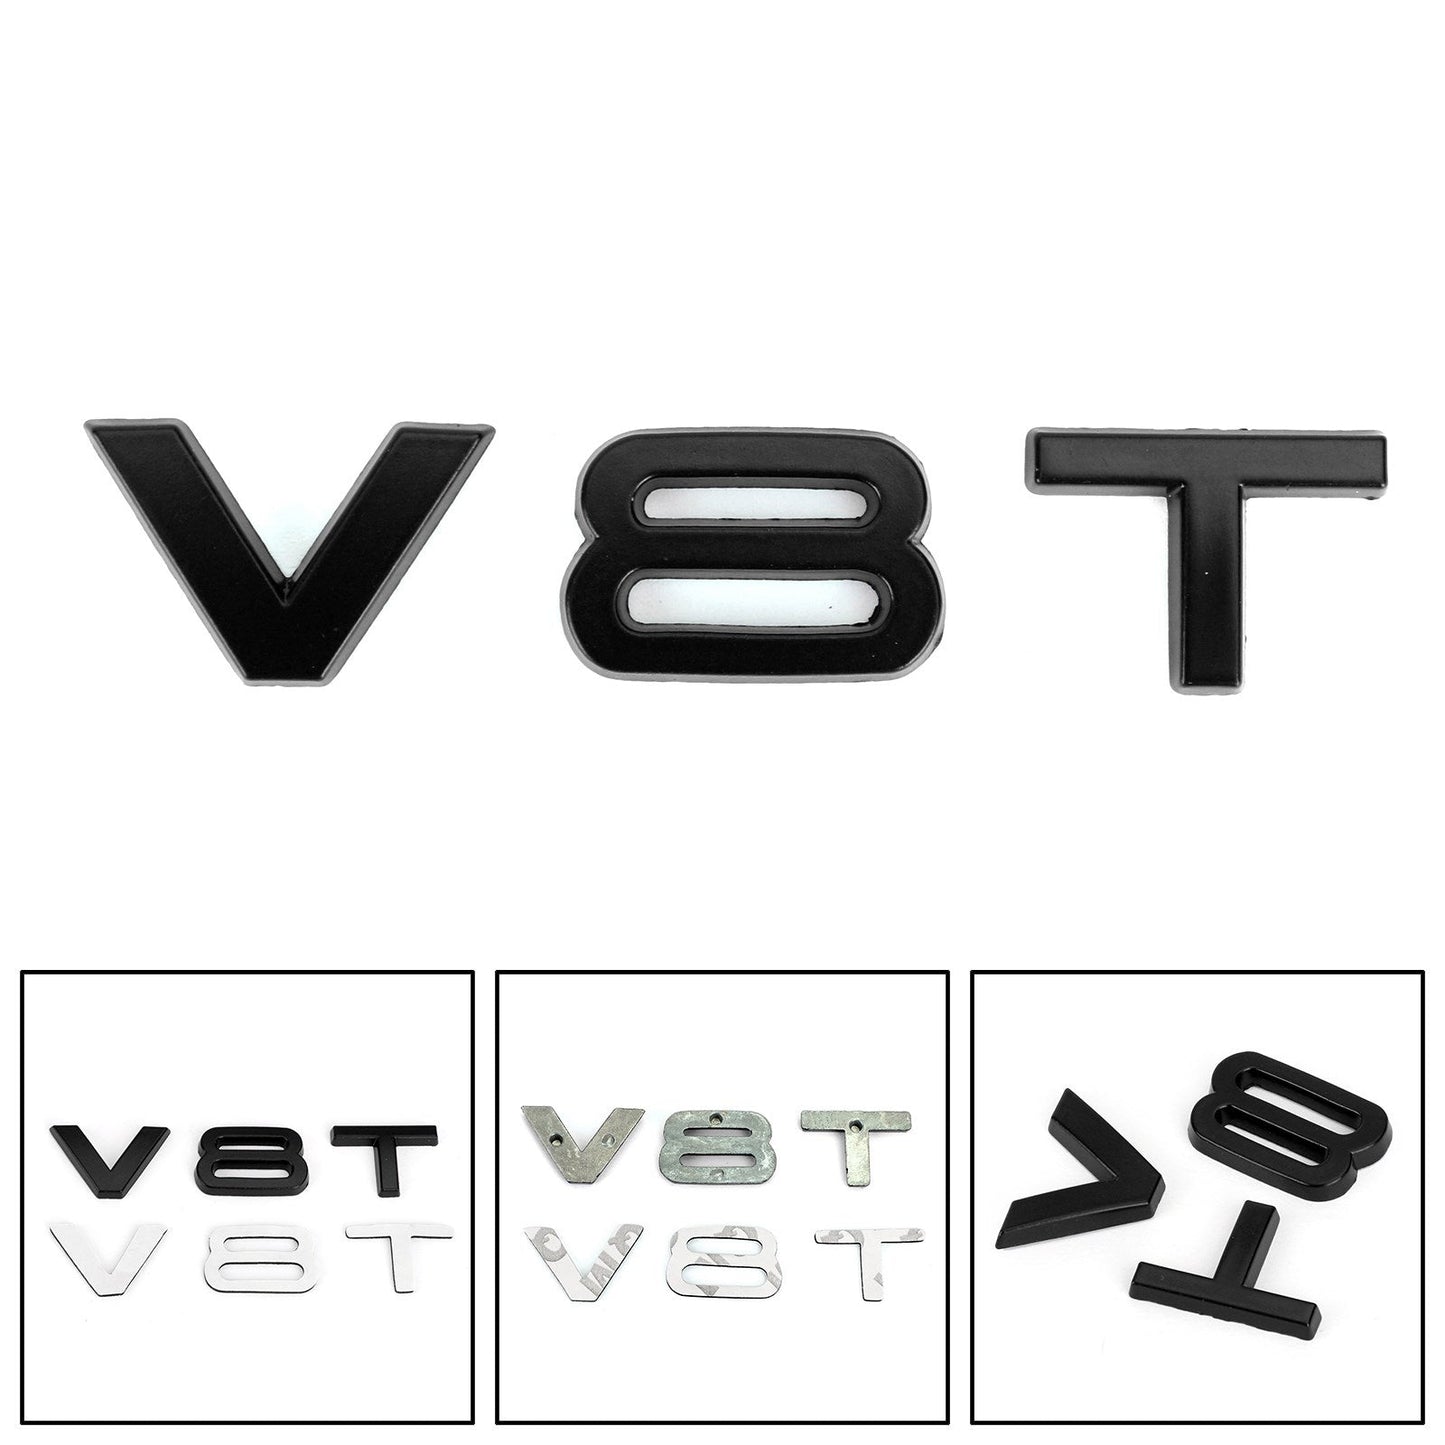 V8T Emblem Badge Fit For AUDI A1 A3 A4 A5 A6 A7 Q3 Q5 Q7 S6 S7 S8 S4 SQ5 Black